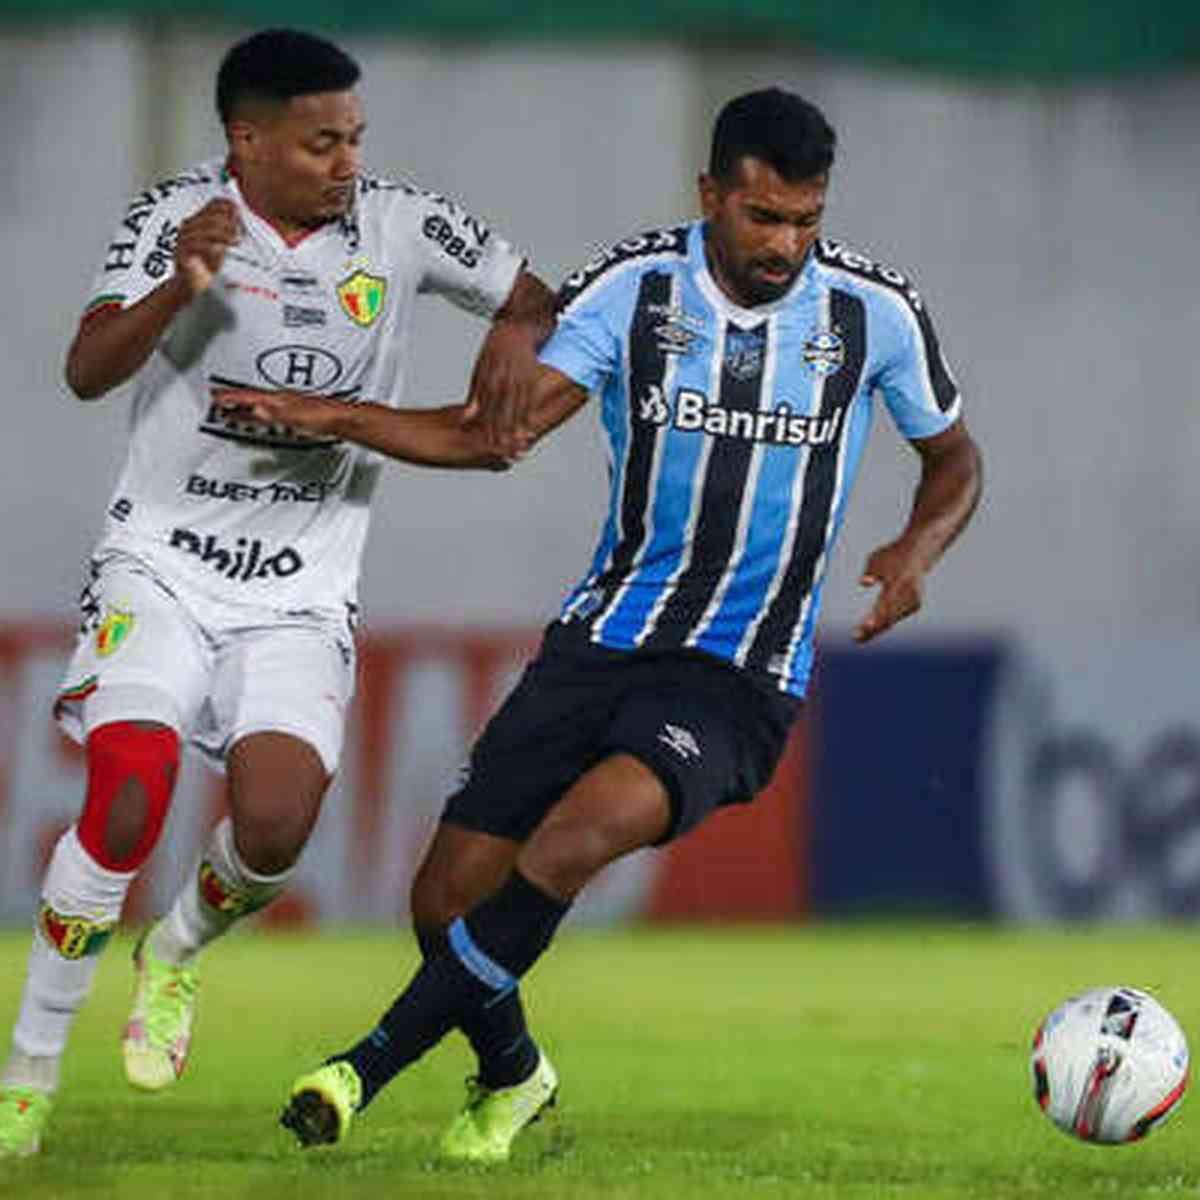 Ceará SC vs Tombense: A Clash of Football Titans